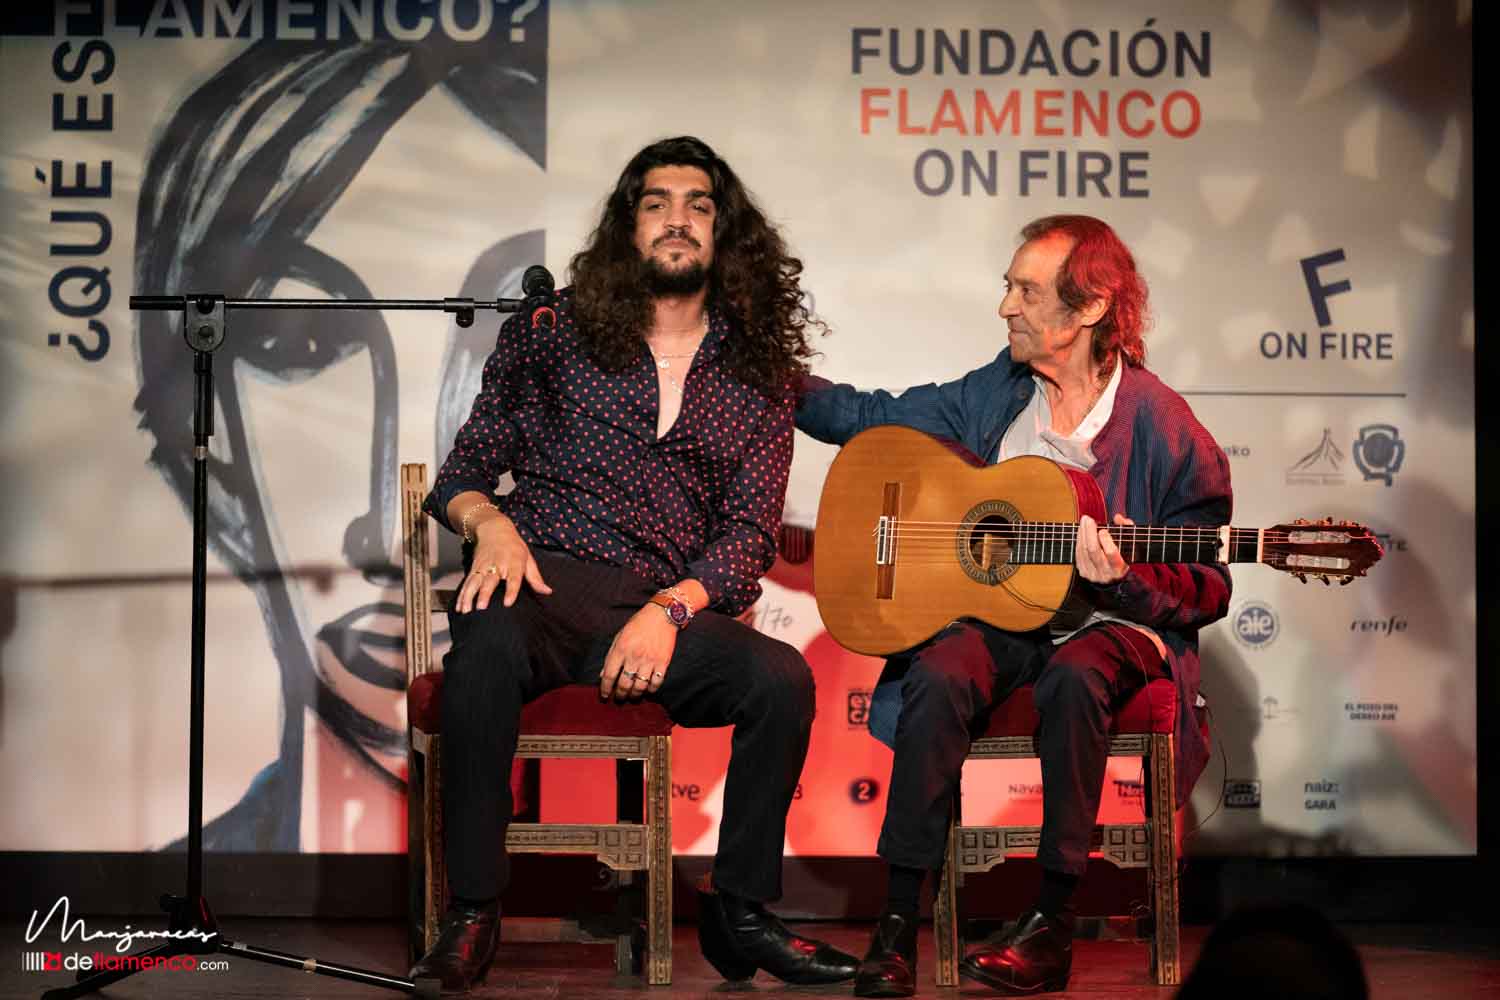 Pamplona on Fire 2021 pregunta ¿qué es flamenco?